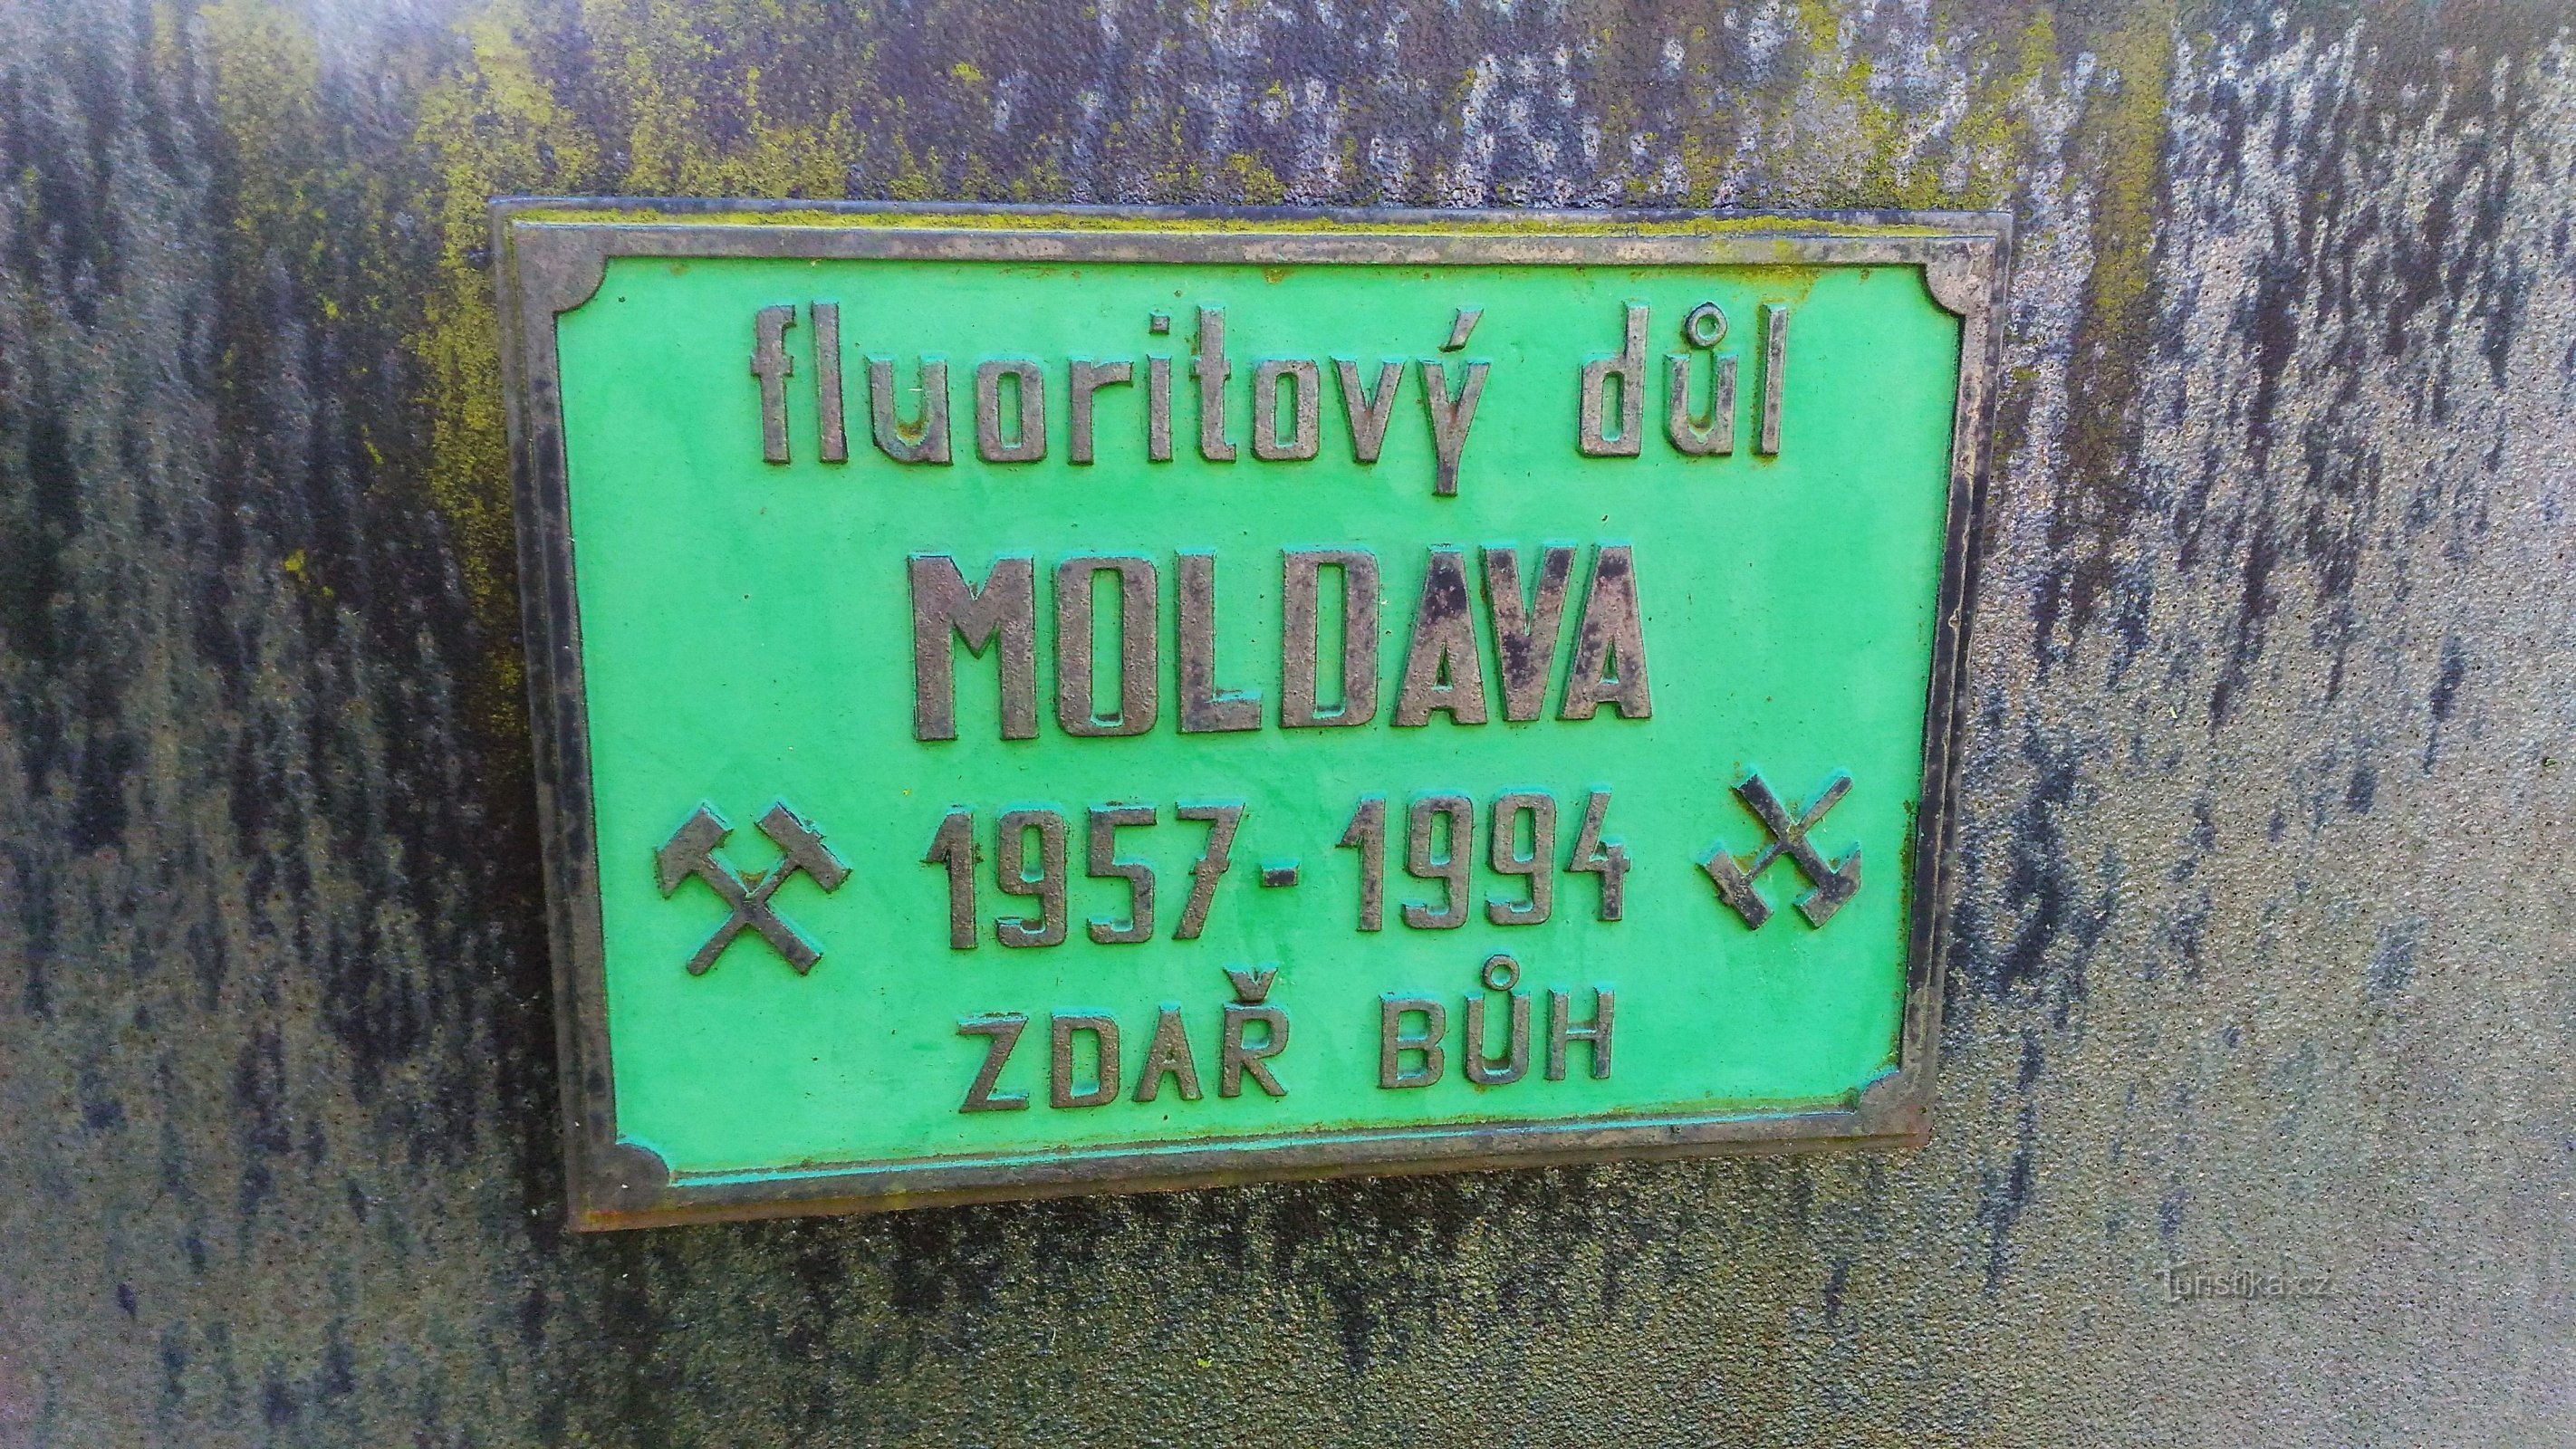 Μνημείο εξόρυξης φθορίτη στη Μολδαβία